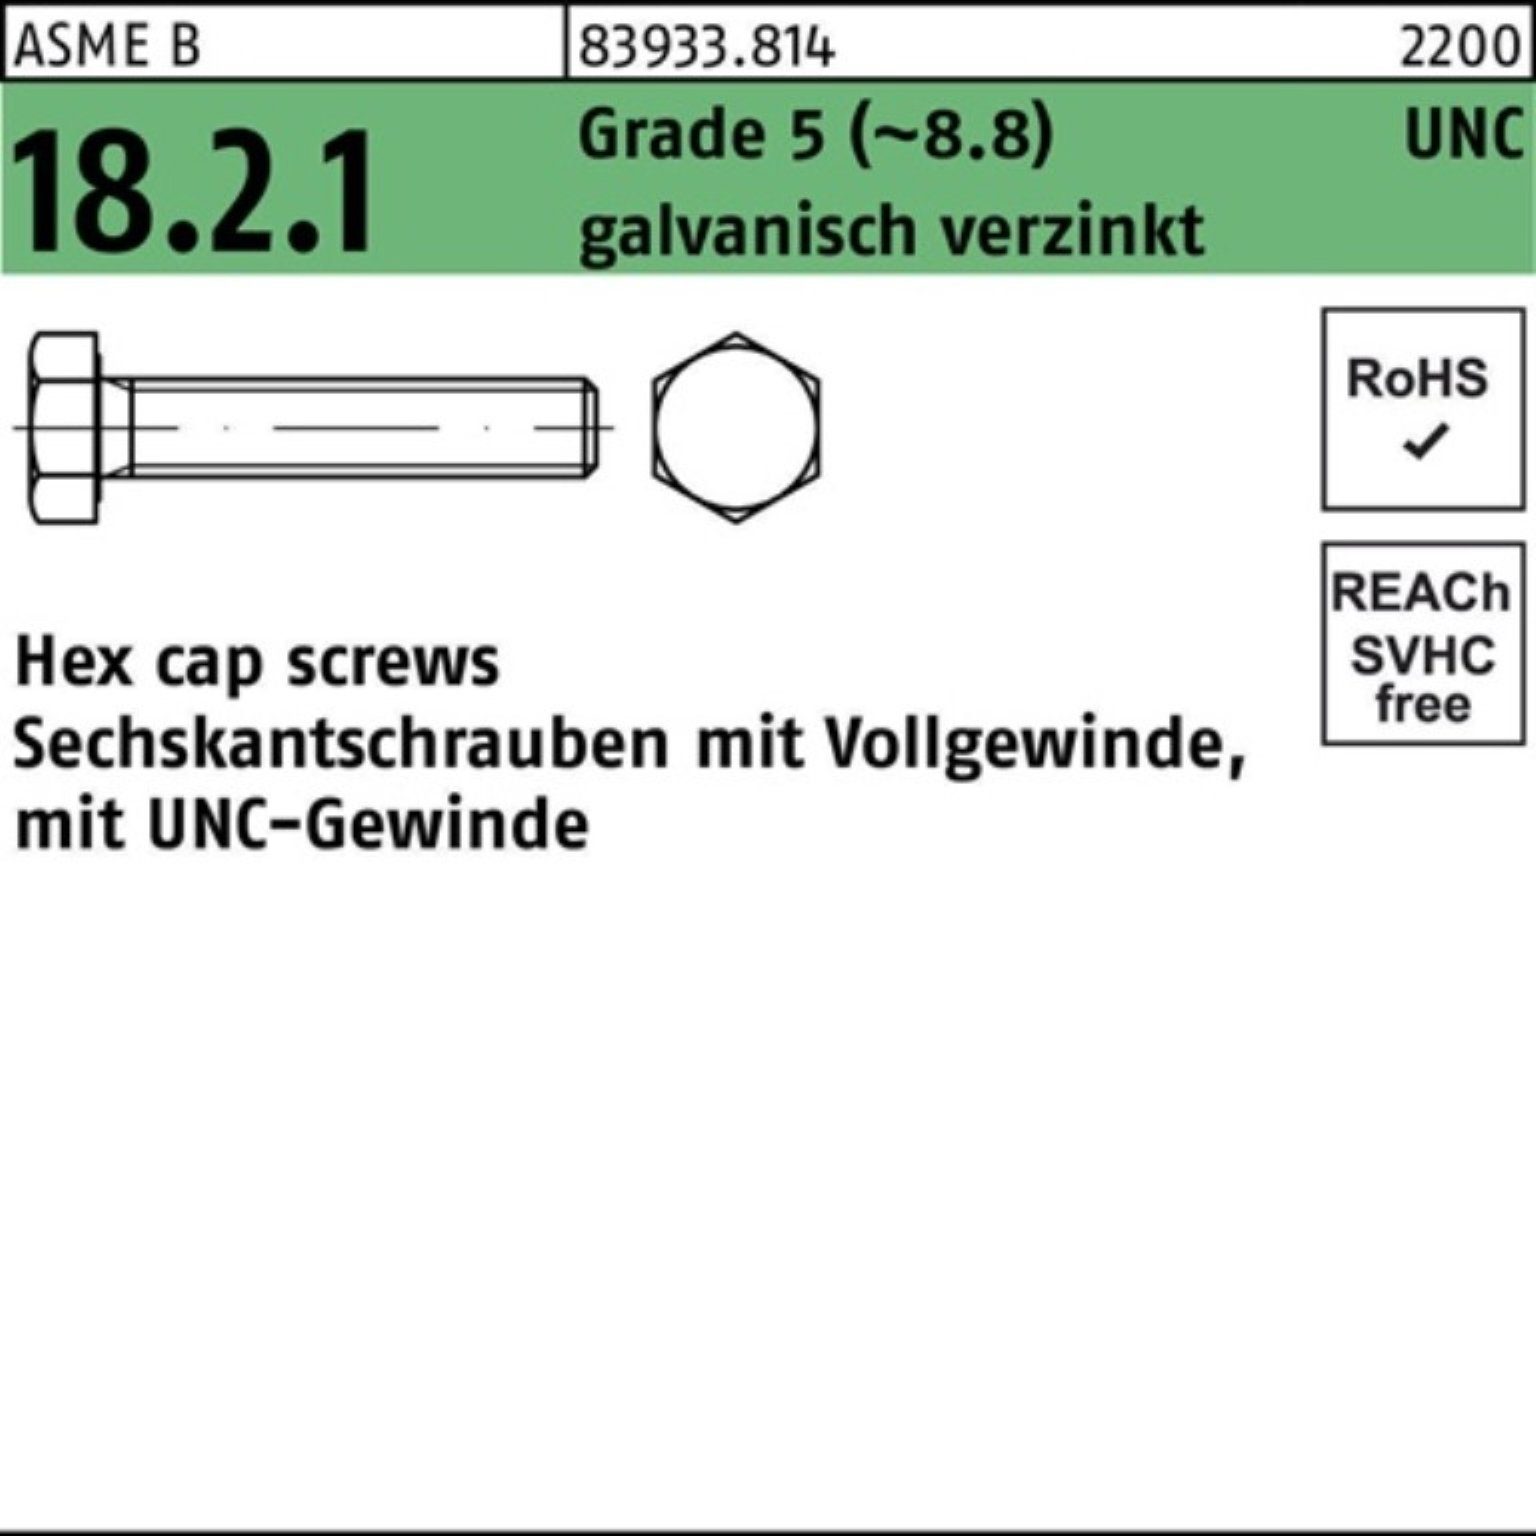 Reyher Sechskantschraube 100er Pack Sechskantschraube R 83933 UNC VG 5/16x7/8 Grade 5 (8.8) ga